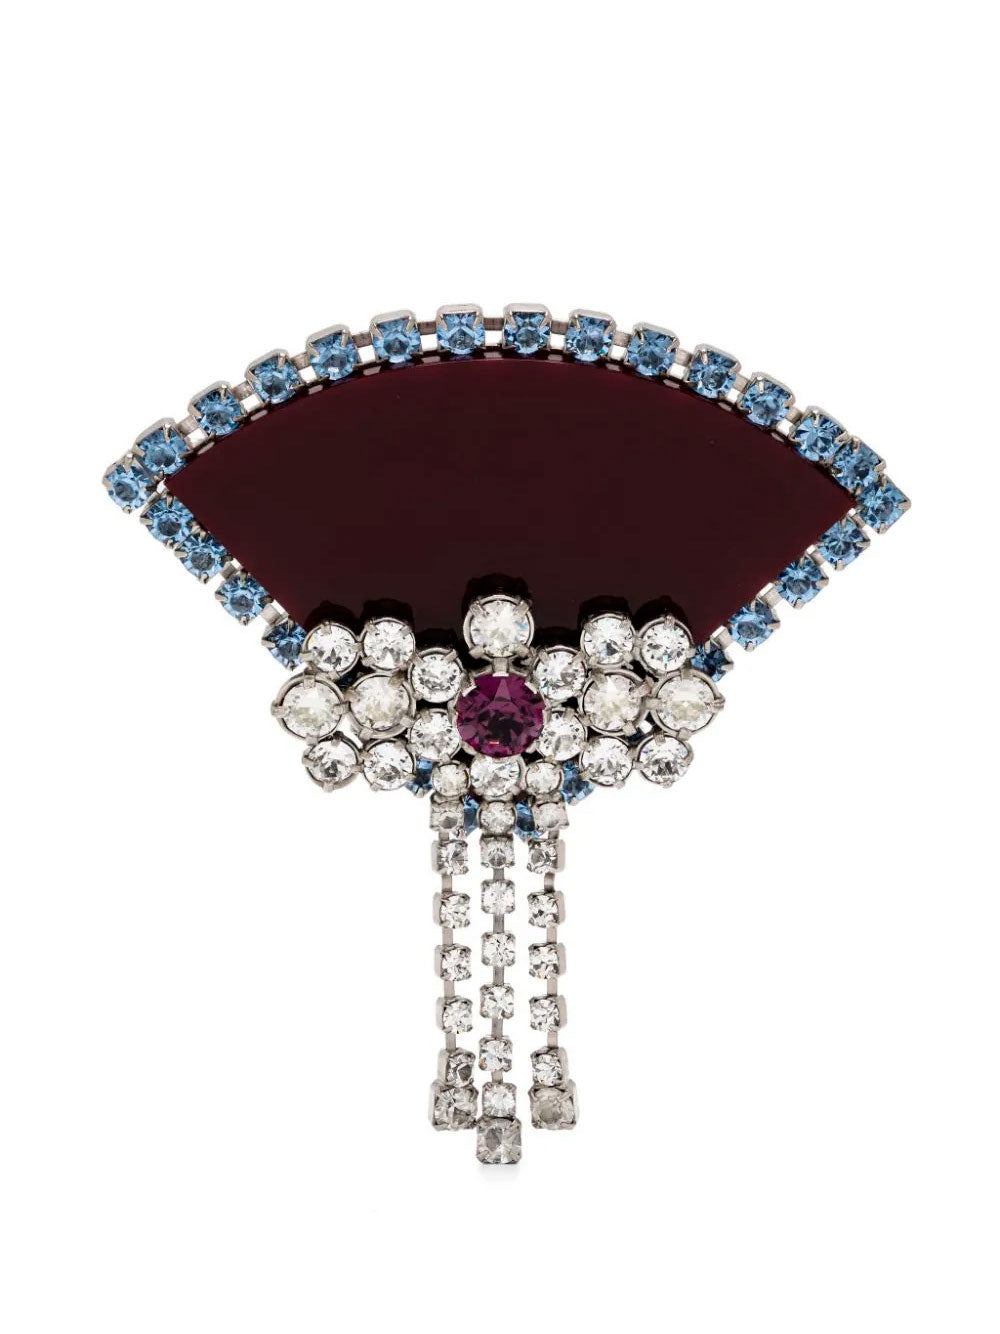 Crystal-embellished brooch